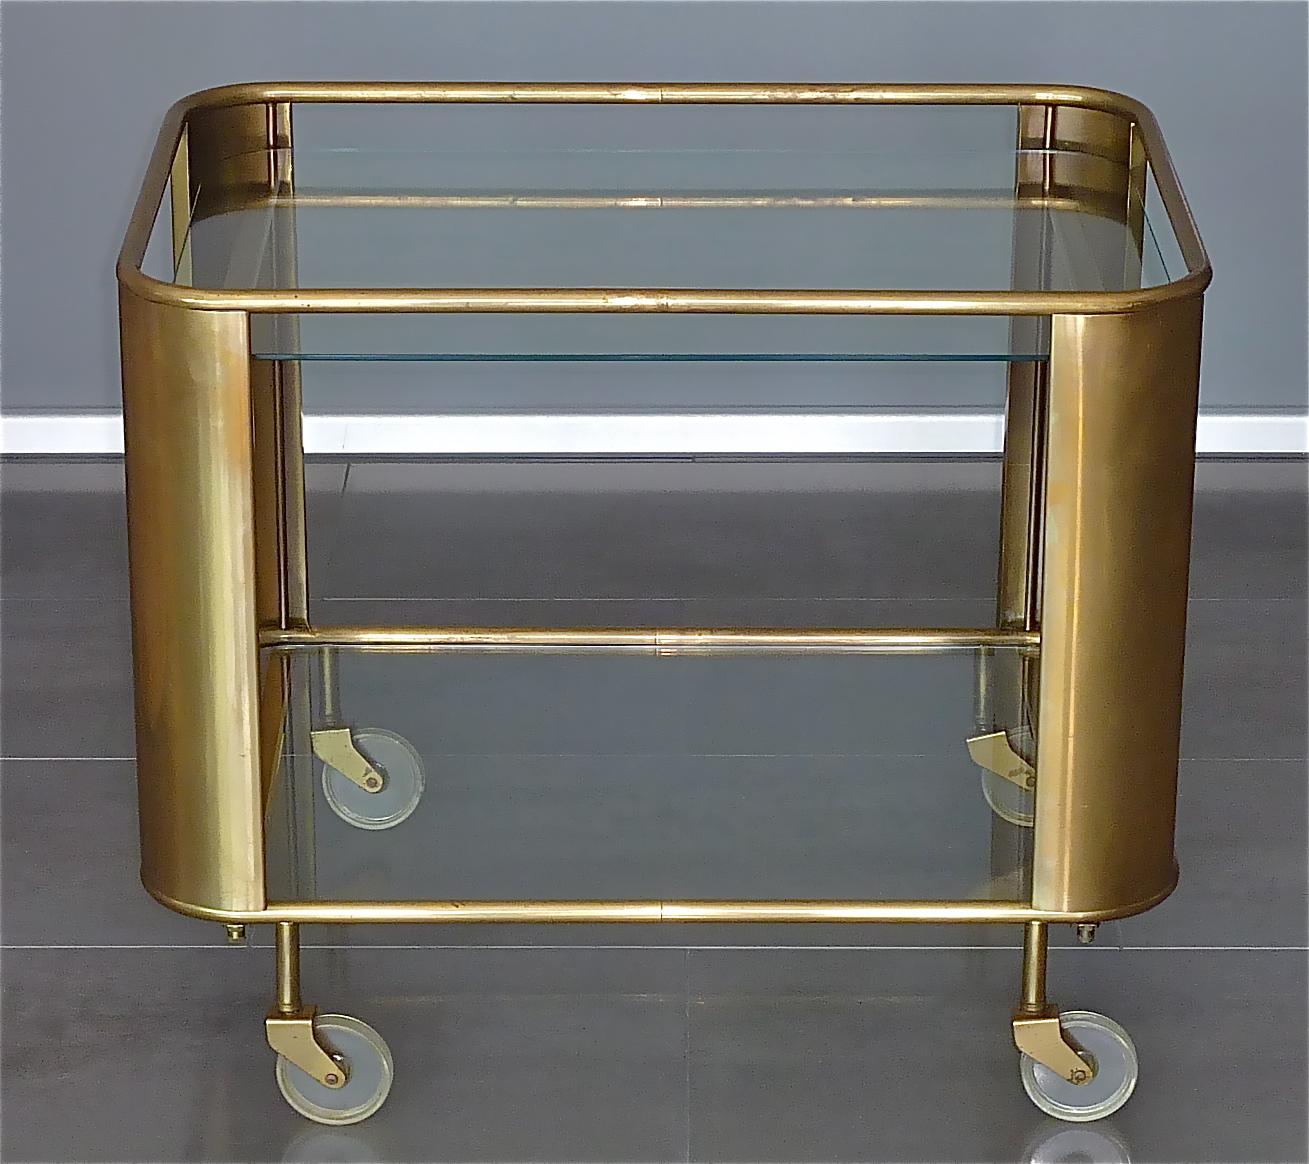 German Bauhaus Art Deco Streamline Serving Trolley Bar Cart Brass Glass Lucite 1930 50s